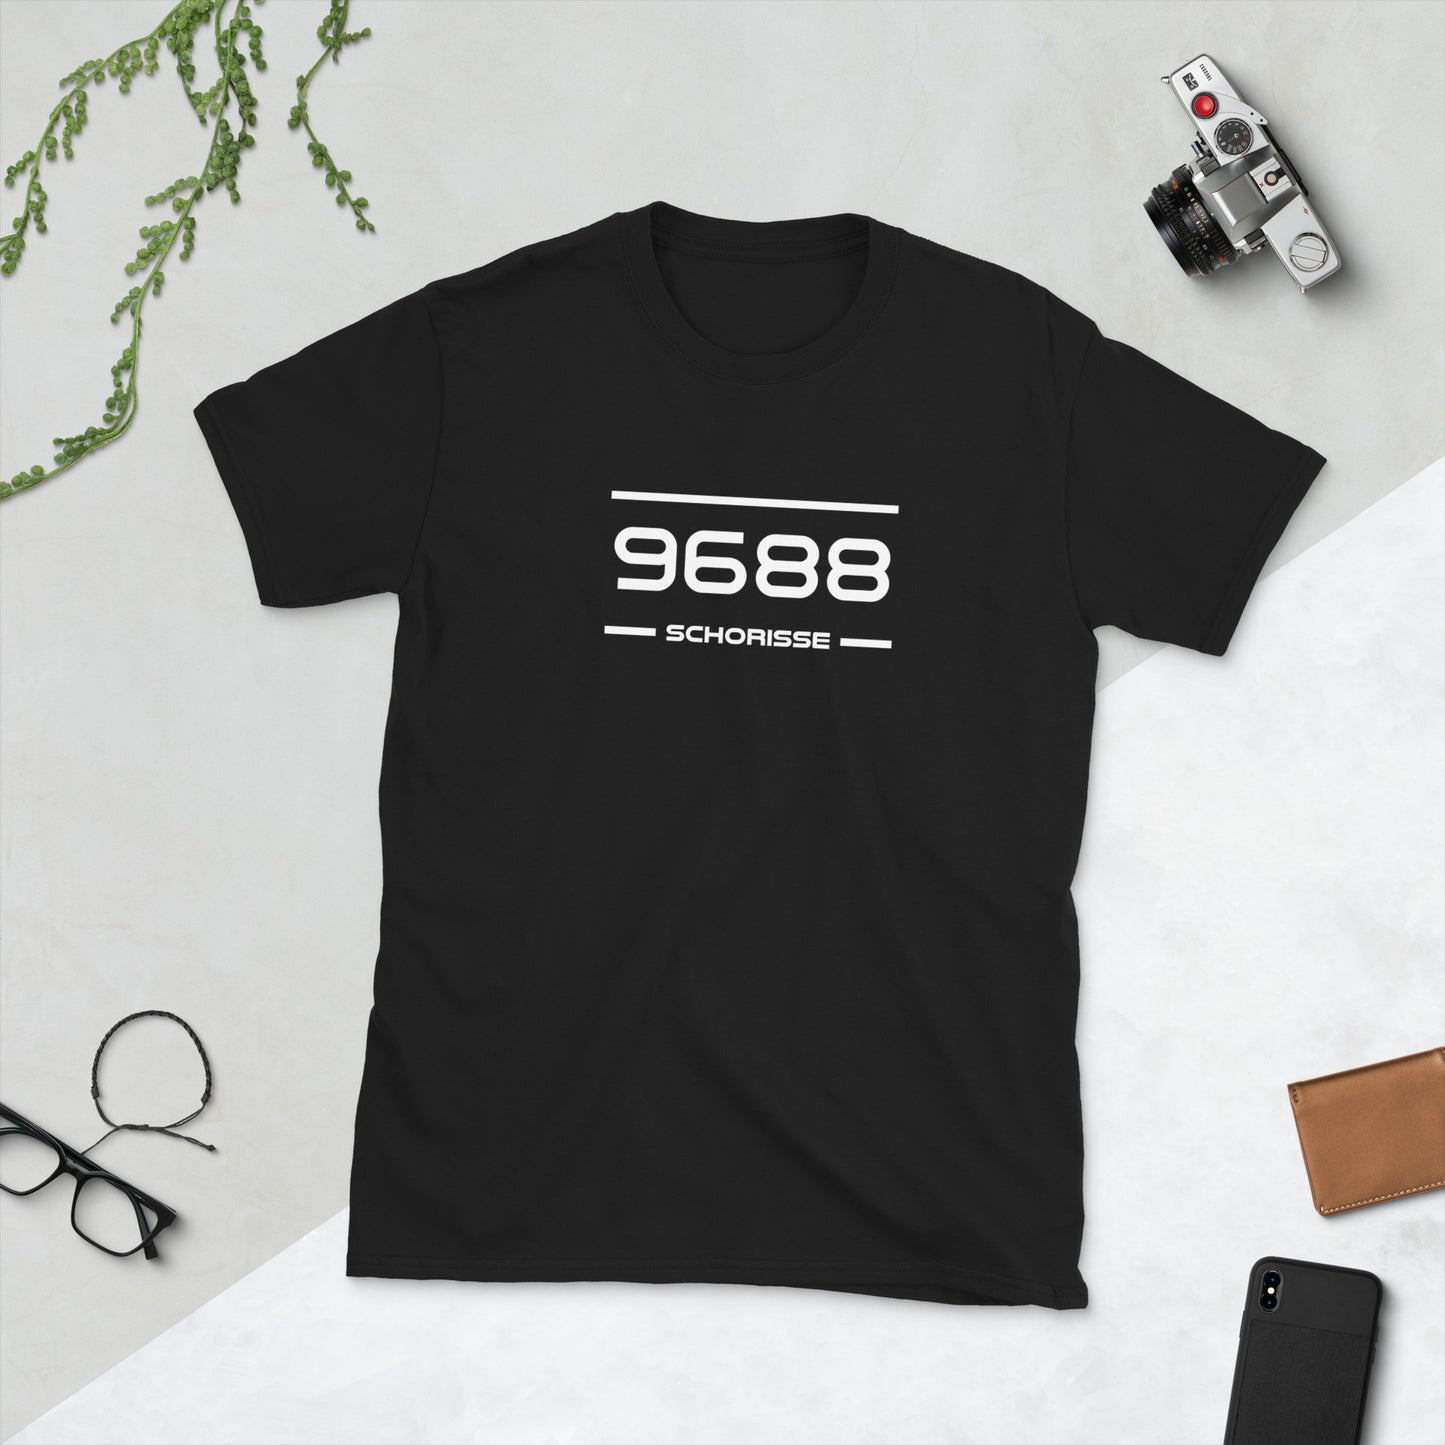 T-Shirt - 9688 - Schorisse